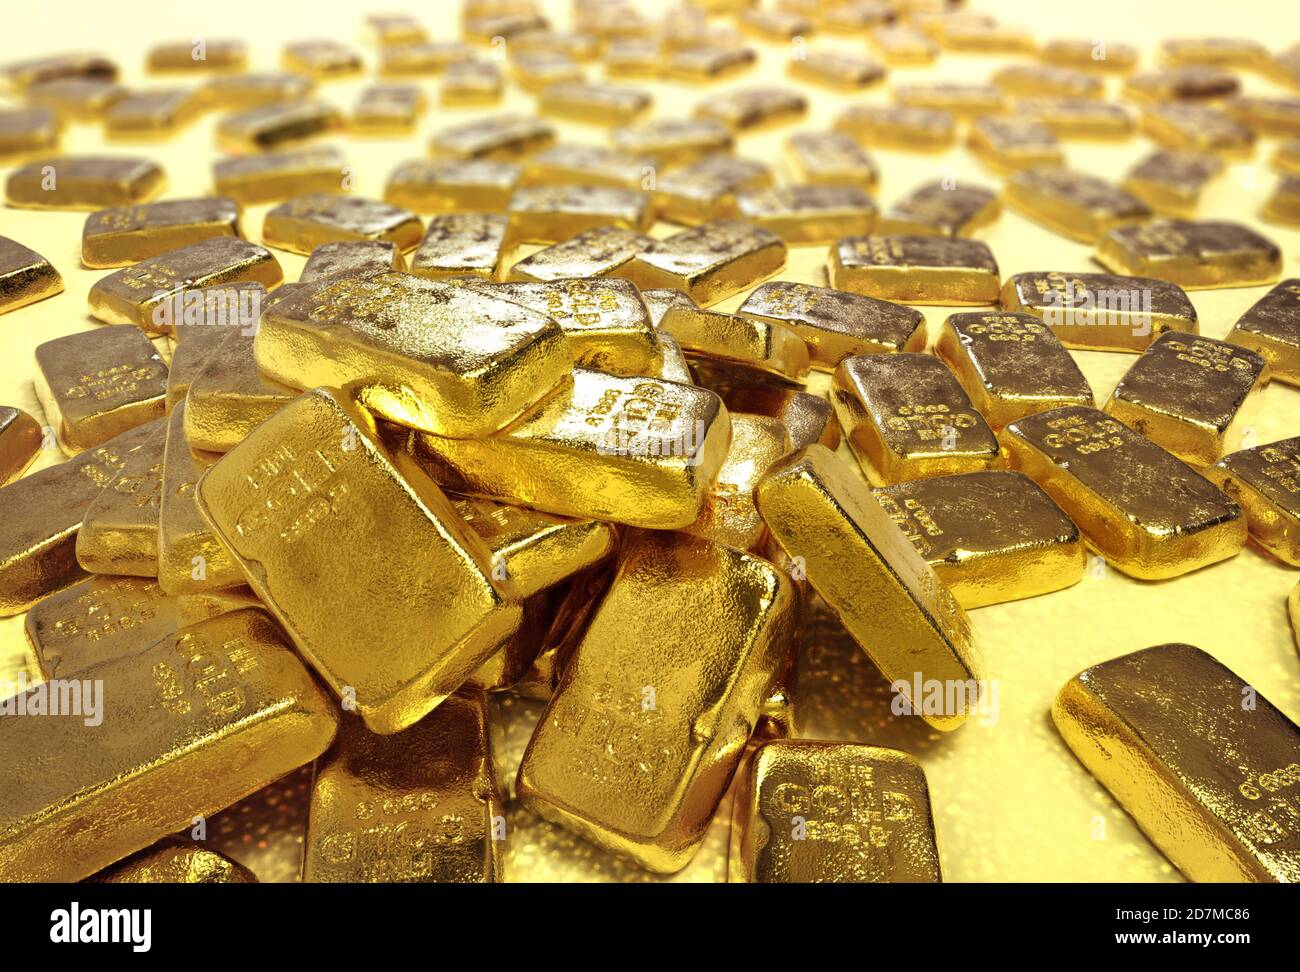 Lingotes de oro barras de oro tesoro riqueza Ingot de lujo finanzas de comercio de bienes, barras de oro apiladas. Foto de stock